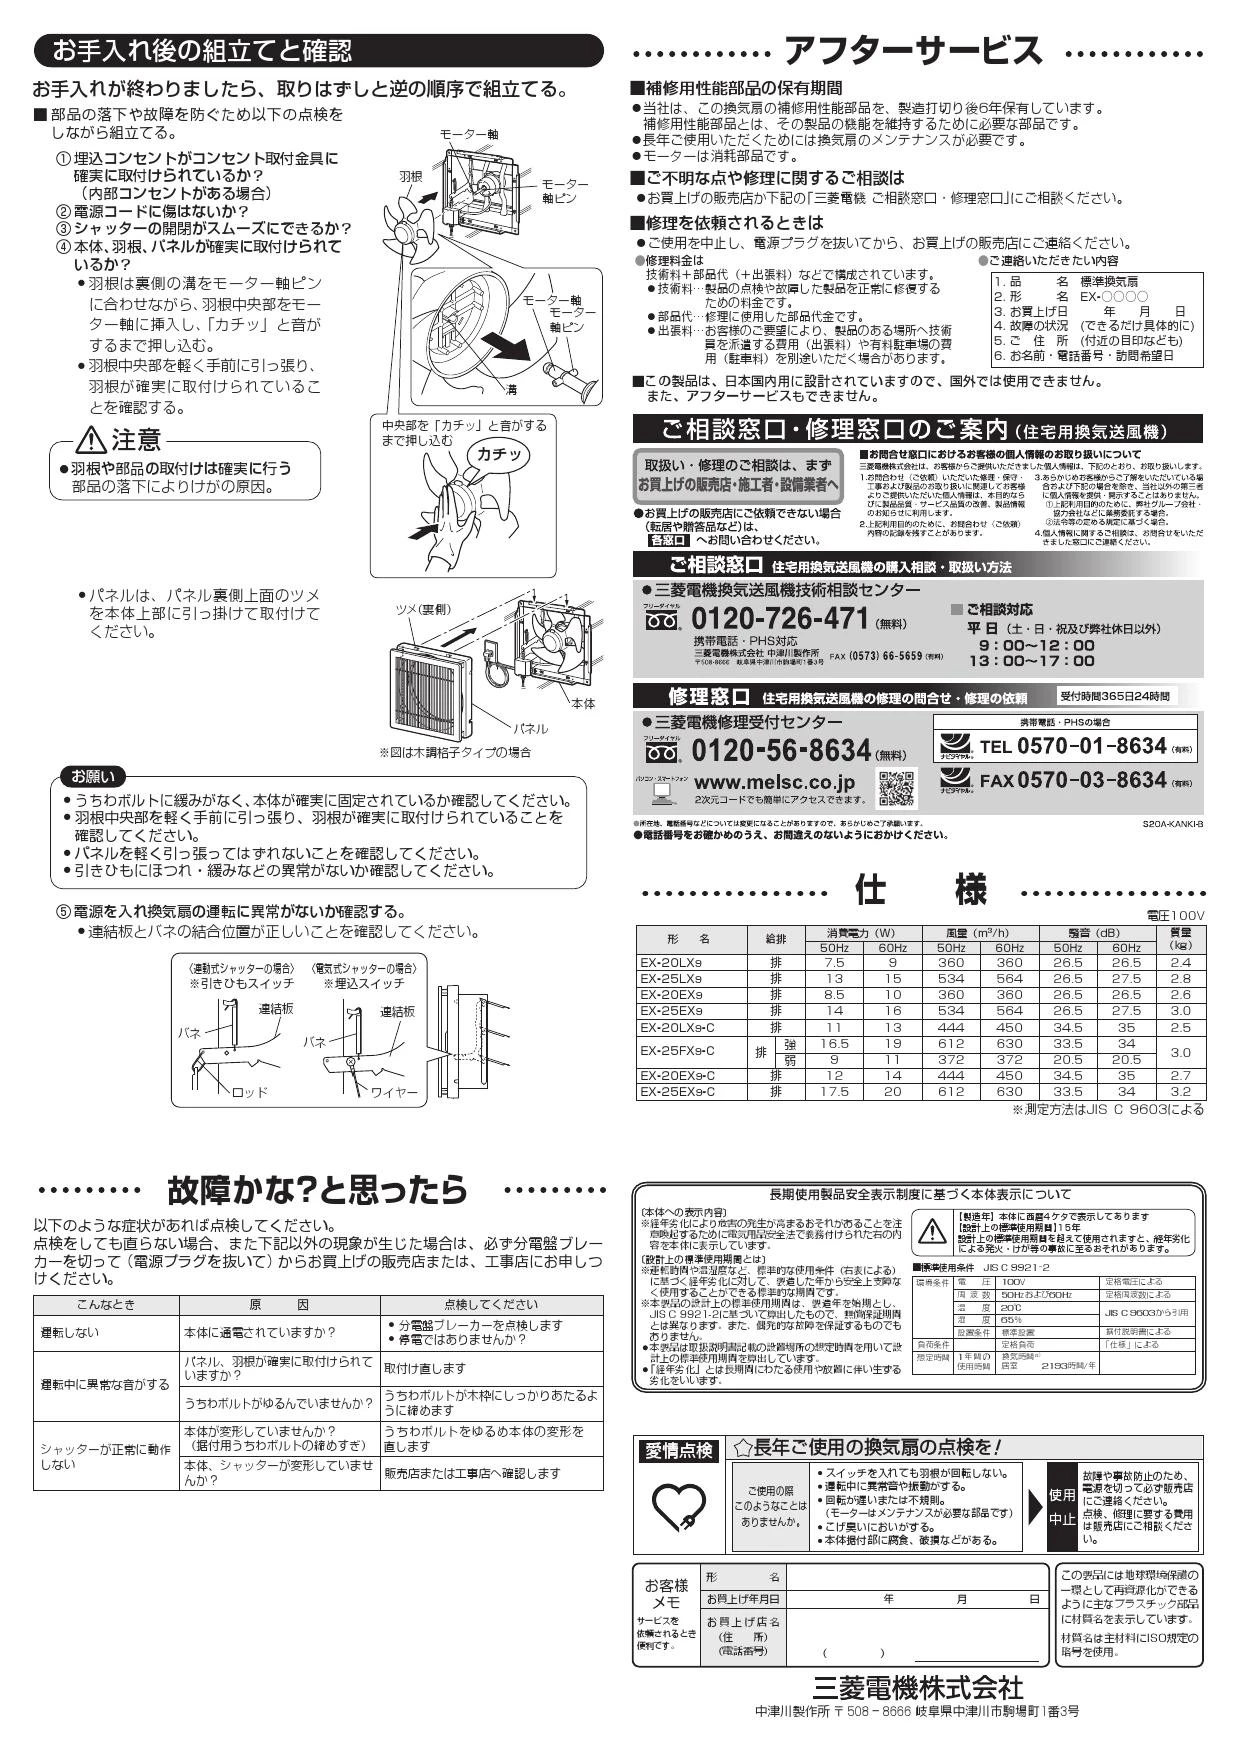 三菱電機 EX-25EX9-C 取扱説明書 施工説明書 納入仕様図|三菱電機 居間 